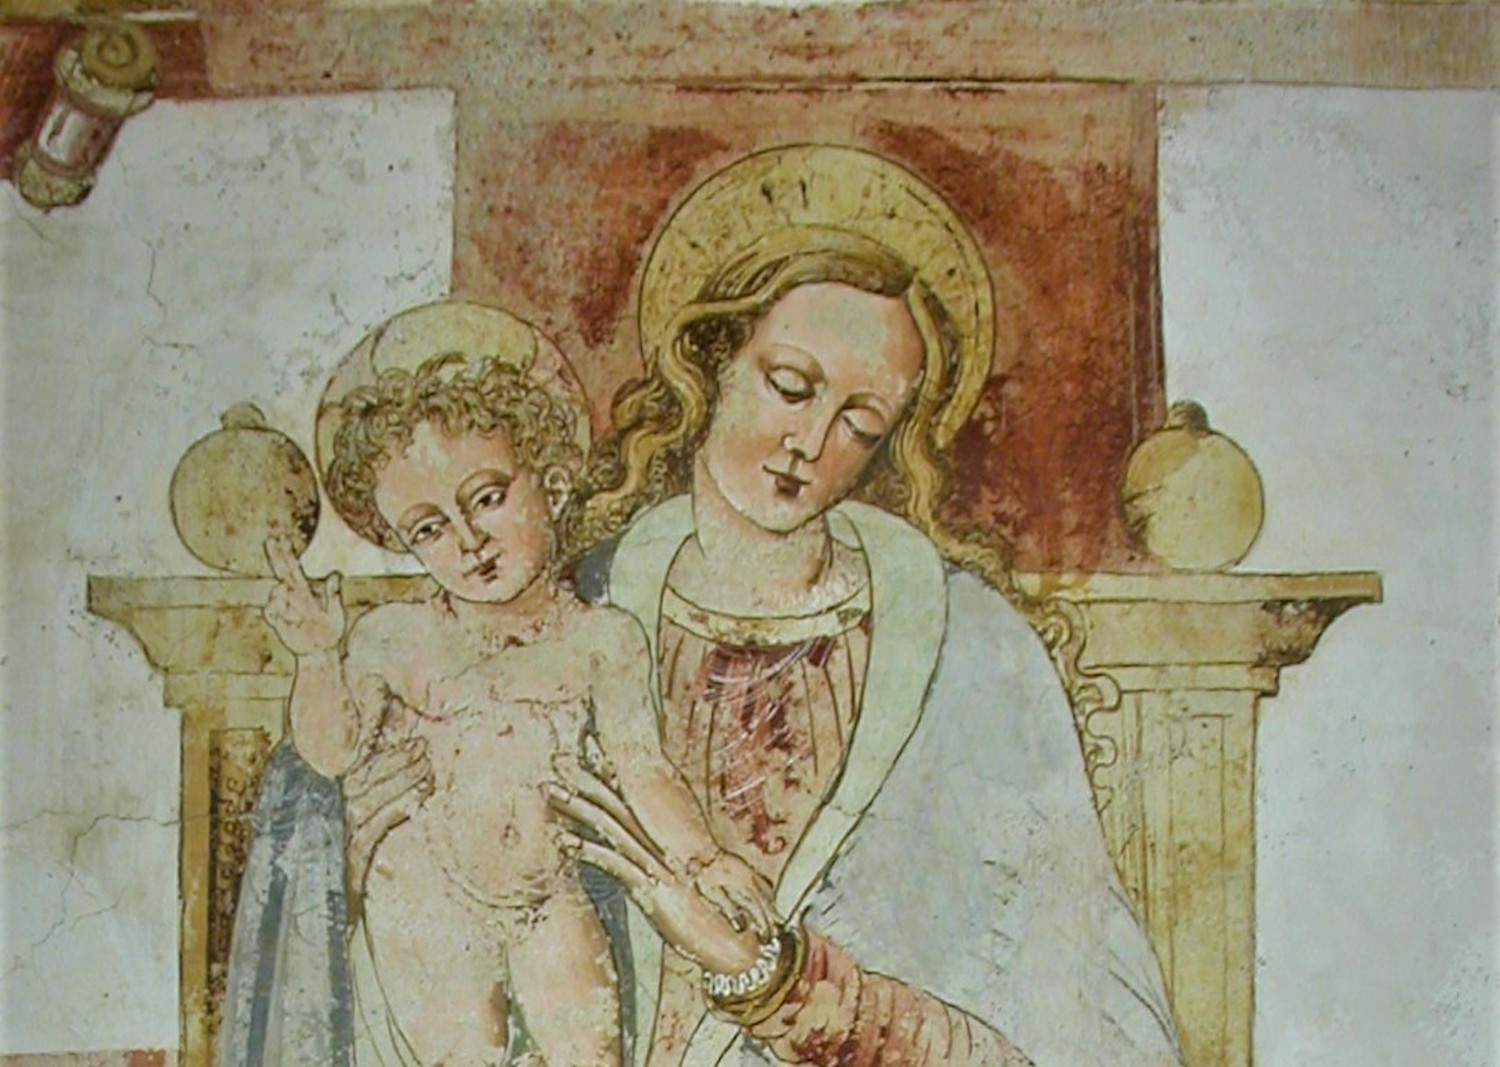 Gli affreschi della cappella cinquecentesca di San Giacomo a Mareta in Valbrevenna